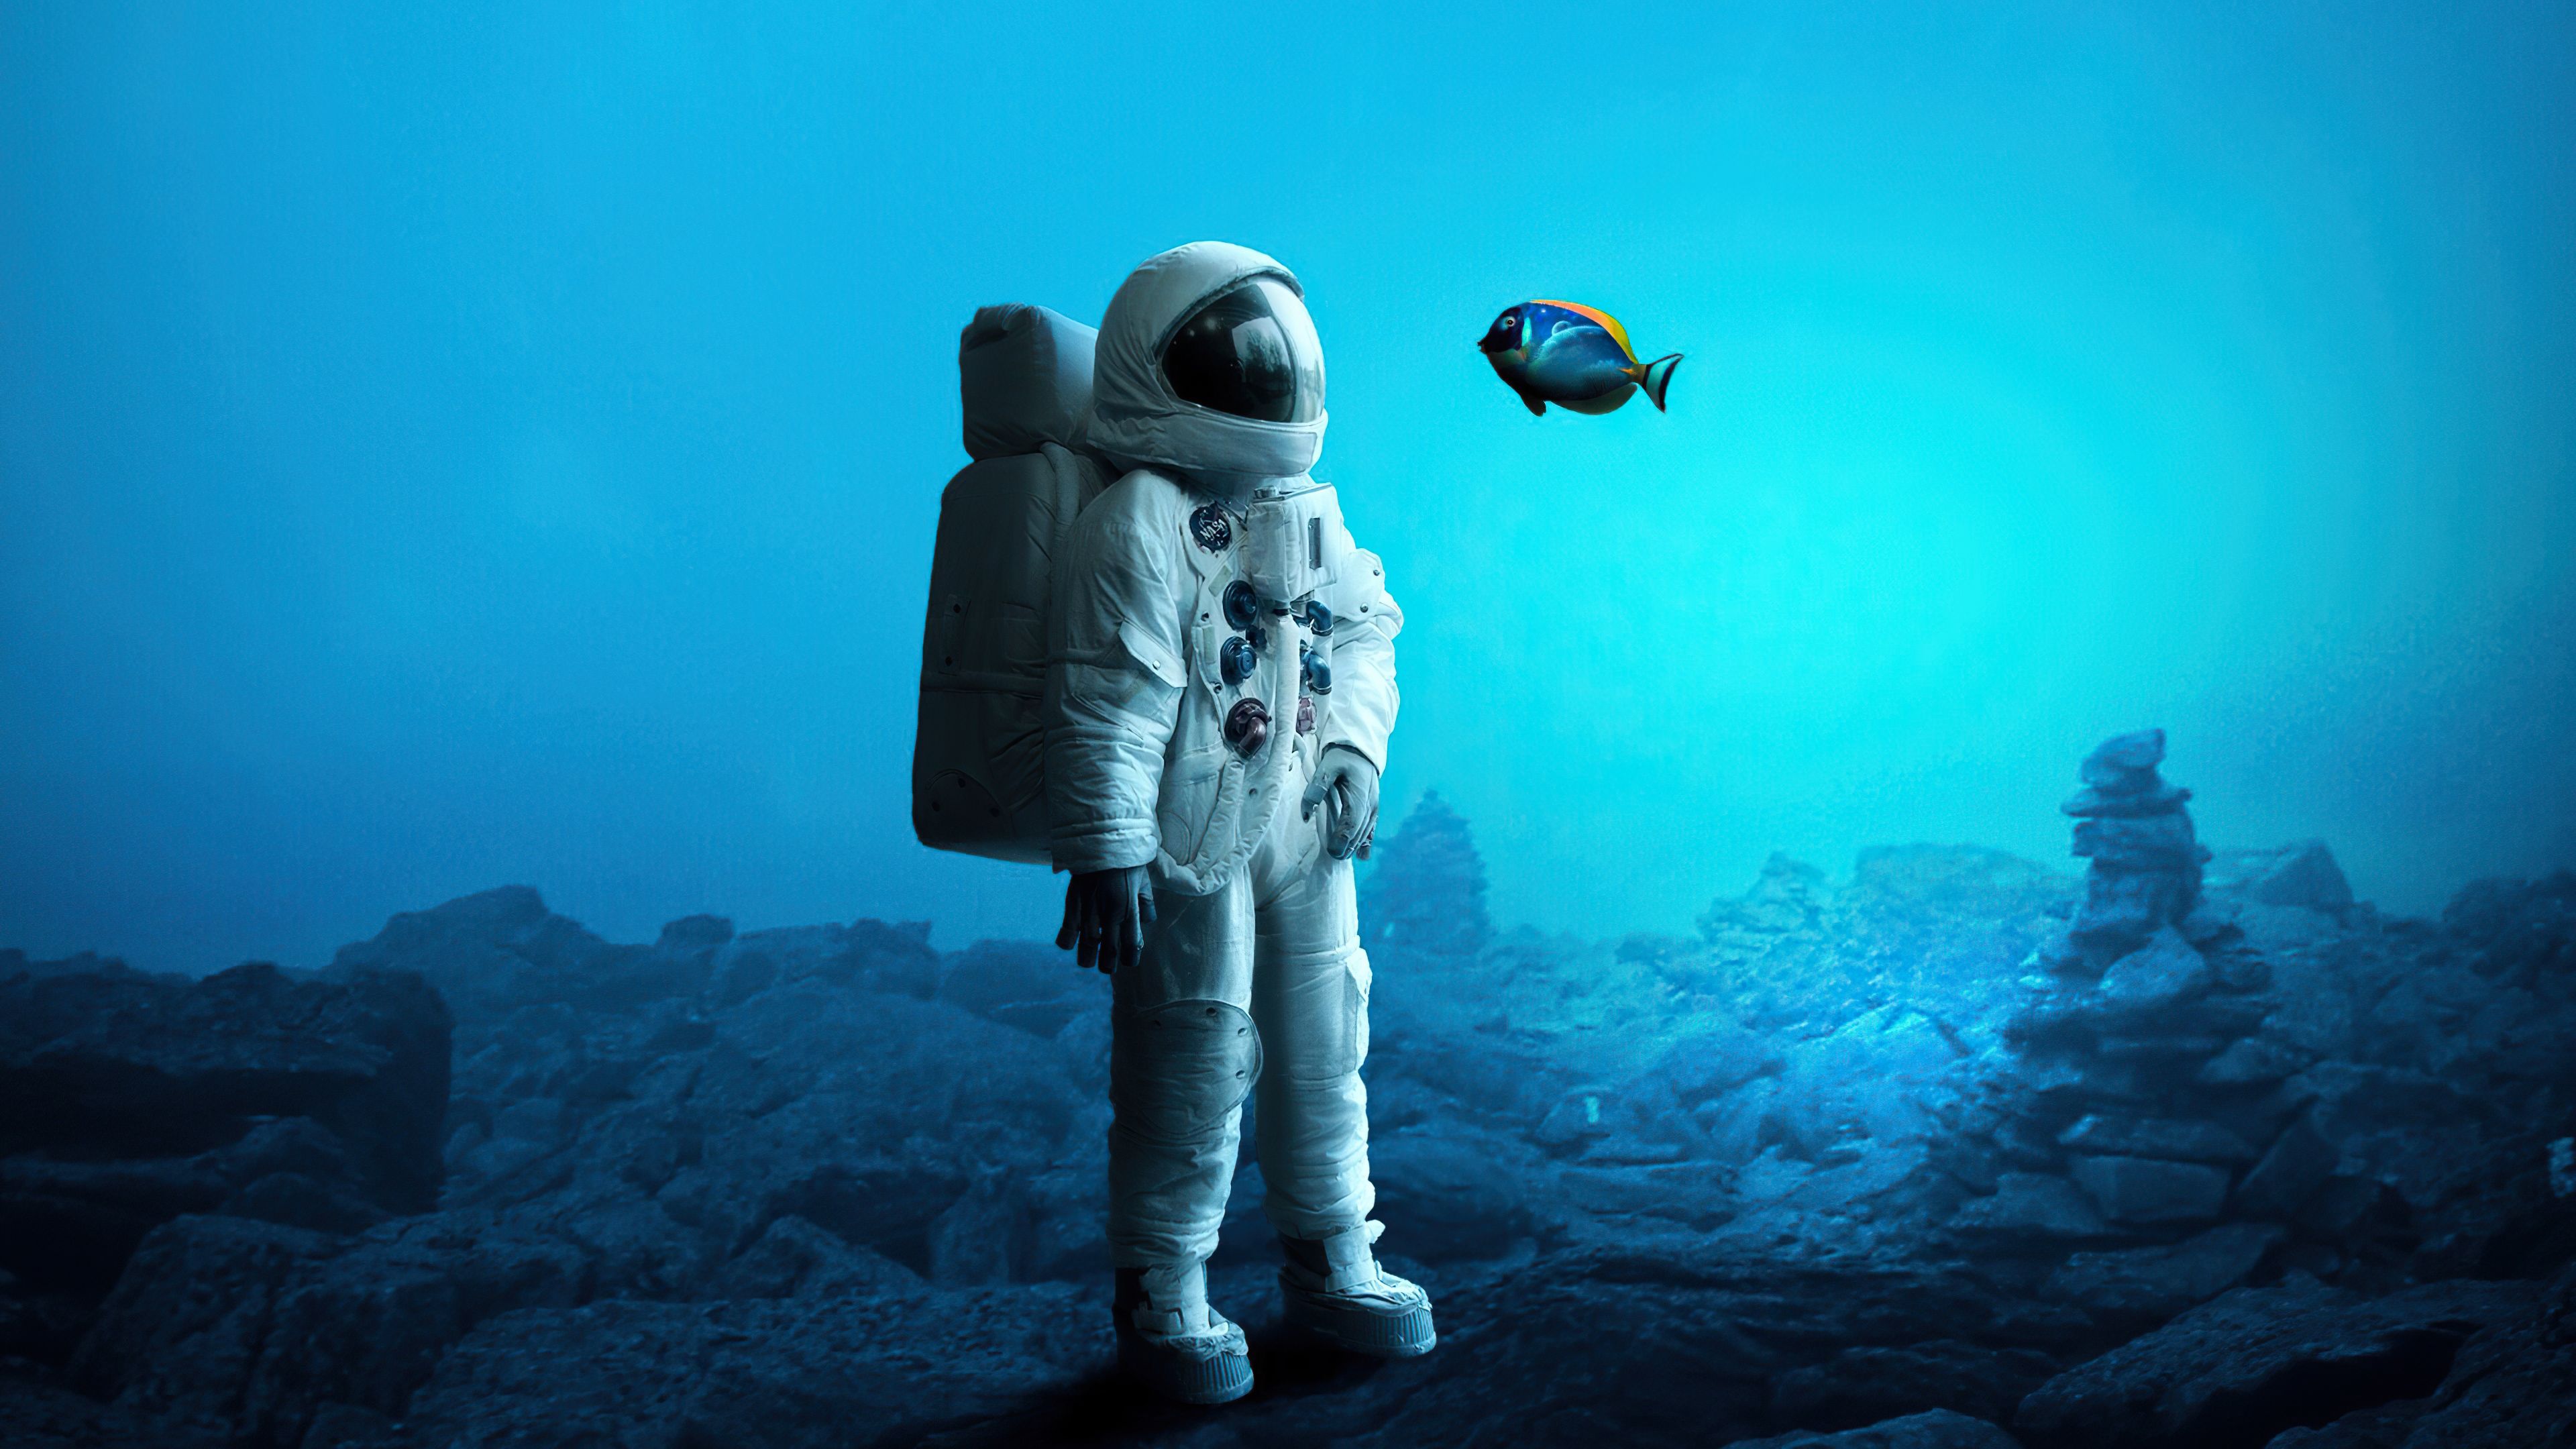 Astronaut In The Ocean Wallpapers - Wallpaper Cave